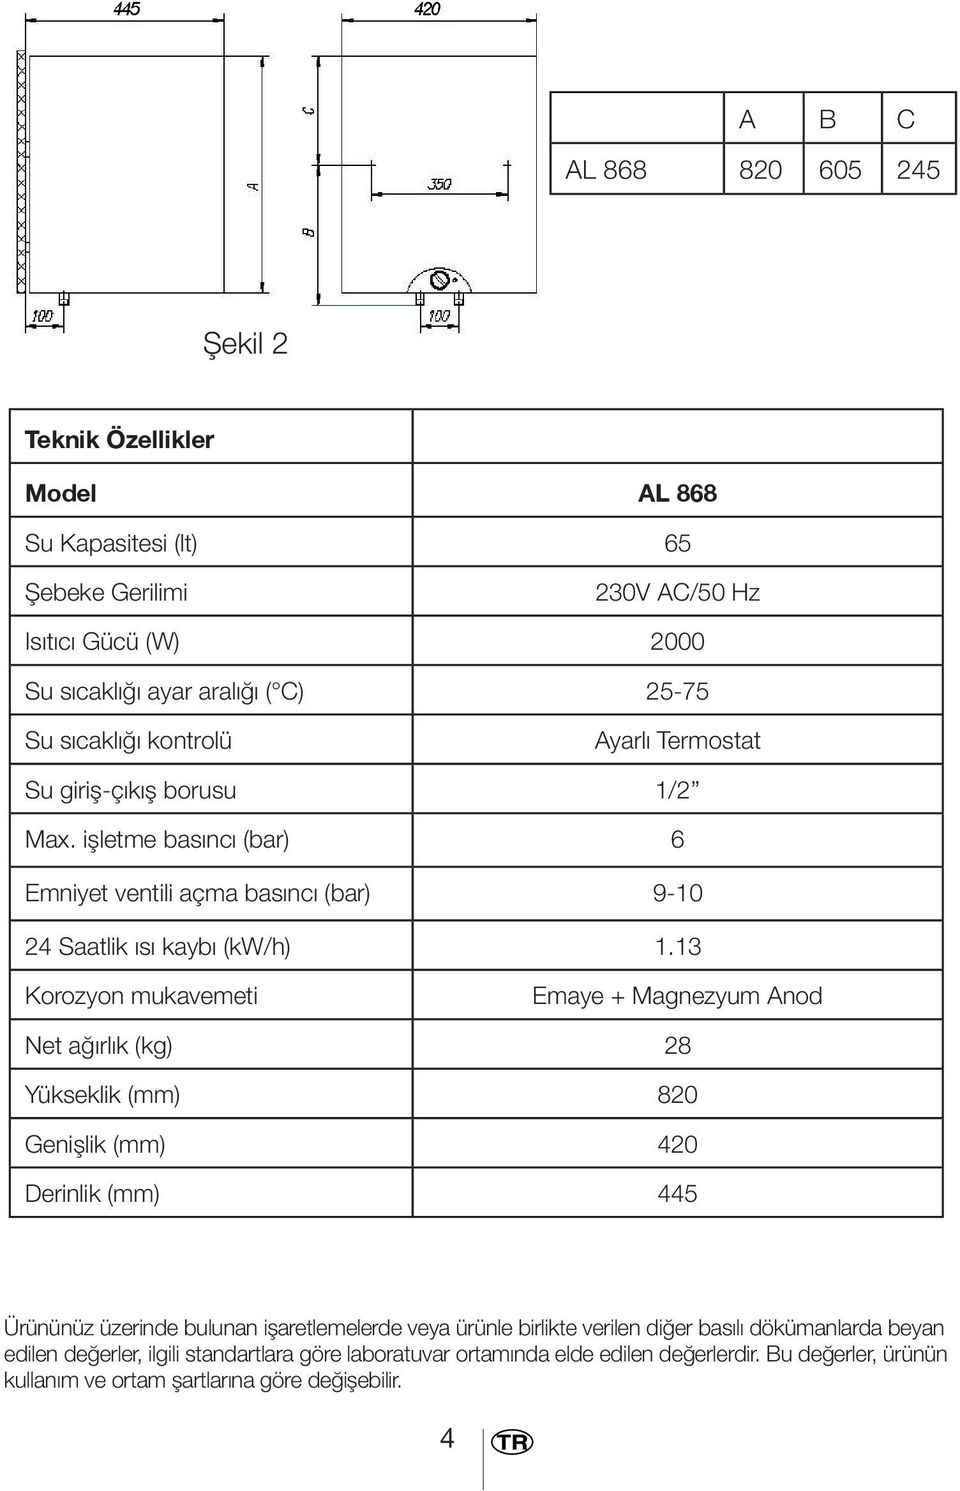 13 Korozyon mukavemeti Emaye + Magnezyum Anod Net ağırlık (kg) 28 Yükseklik (mm) 820 Genişlik (mm) 420 Derinlik (mm) 445 Ürününüz üzerinde bulunan işaretlemelerde veya ürünle